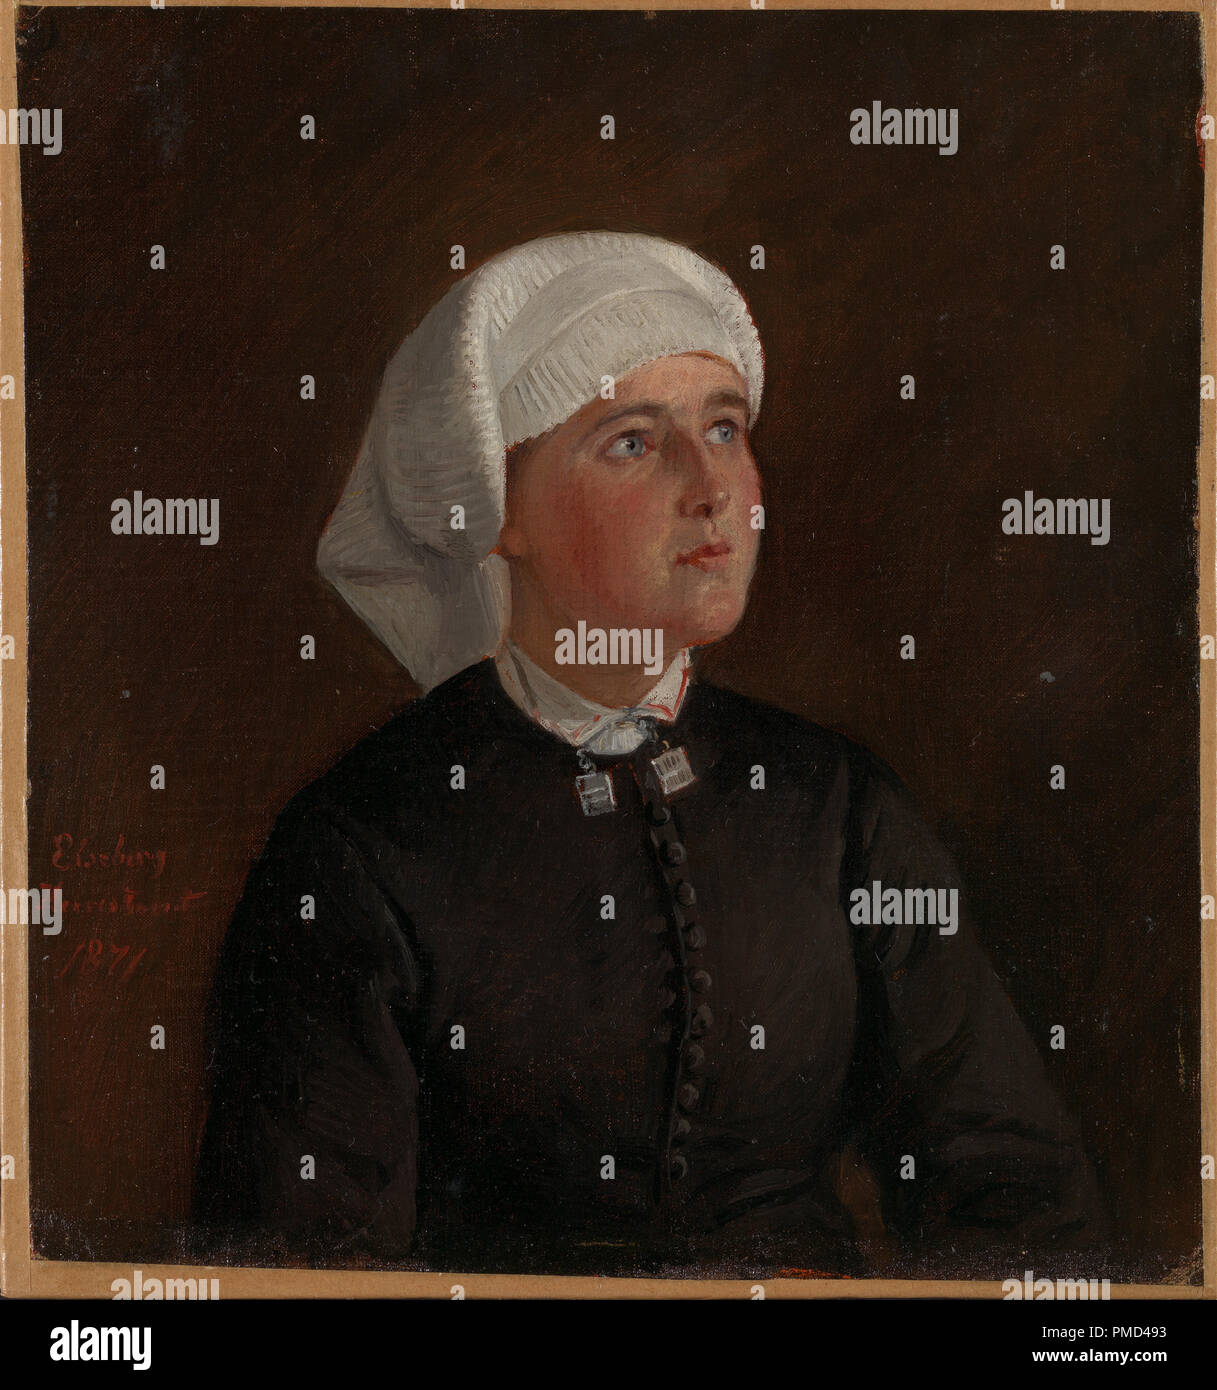 Portrait of Elseberg Herrestvedt. Date/Period: 1871. Painting. Olje på lerret oppklebet på trefiberplate. Width: 22 cm. Height: 23.5 cm. Author: Adolph Tidemand. Stock Photo